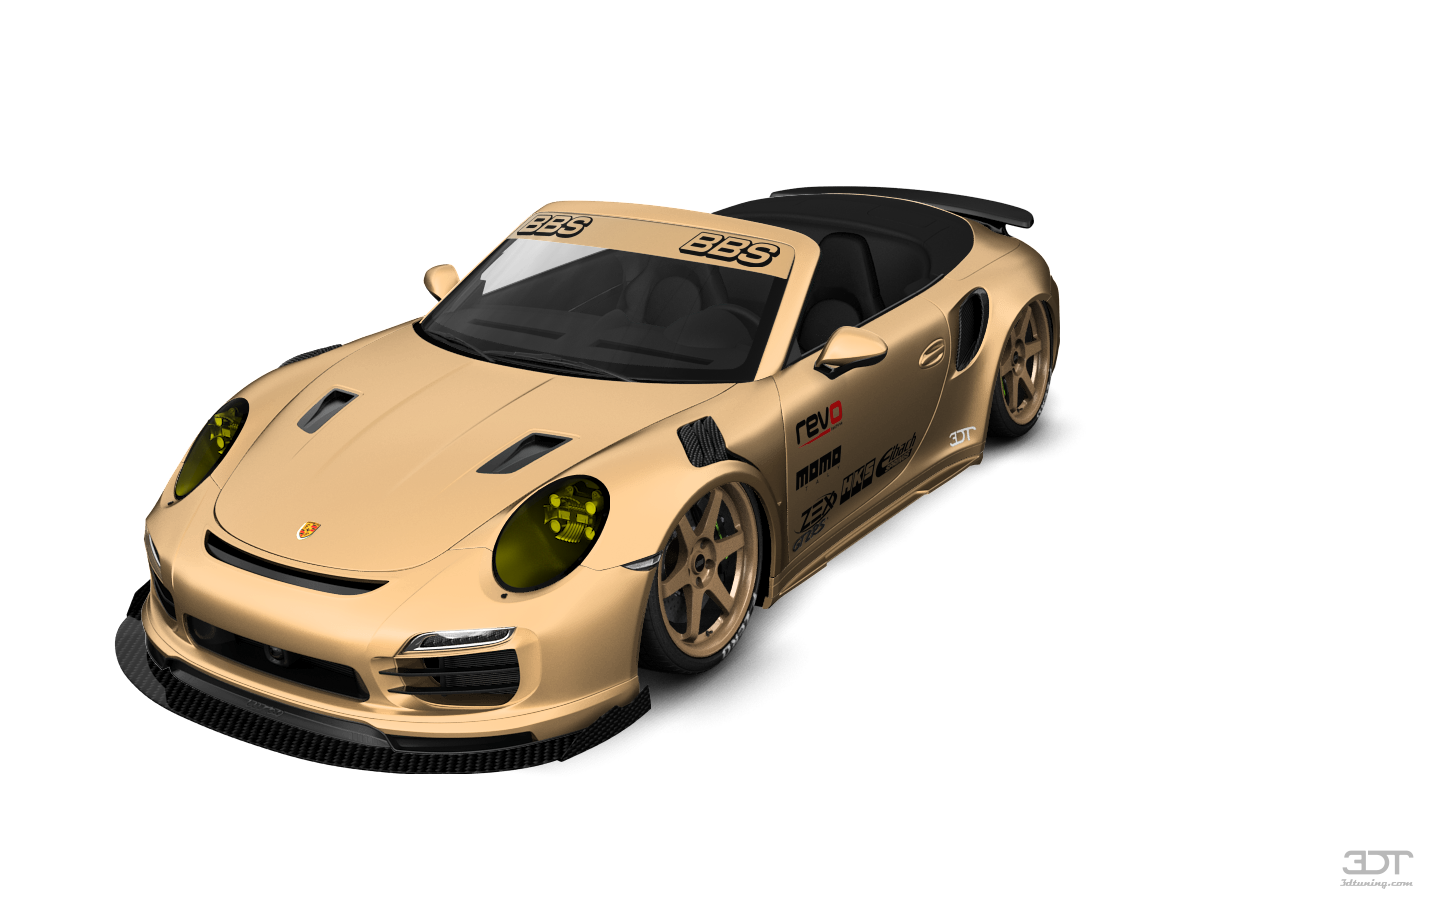 Porsche 911 Turbo S 2 Door Convertible 2014 tuning